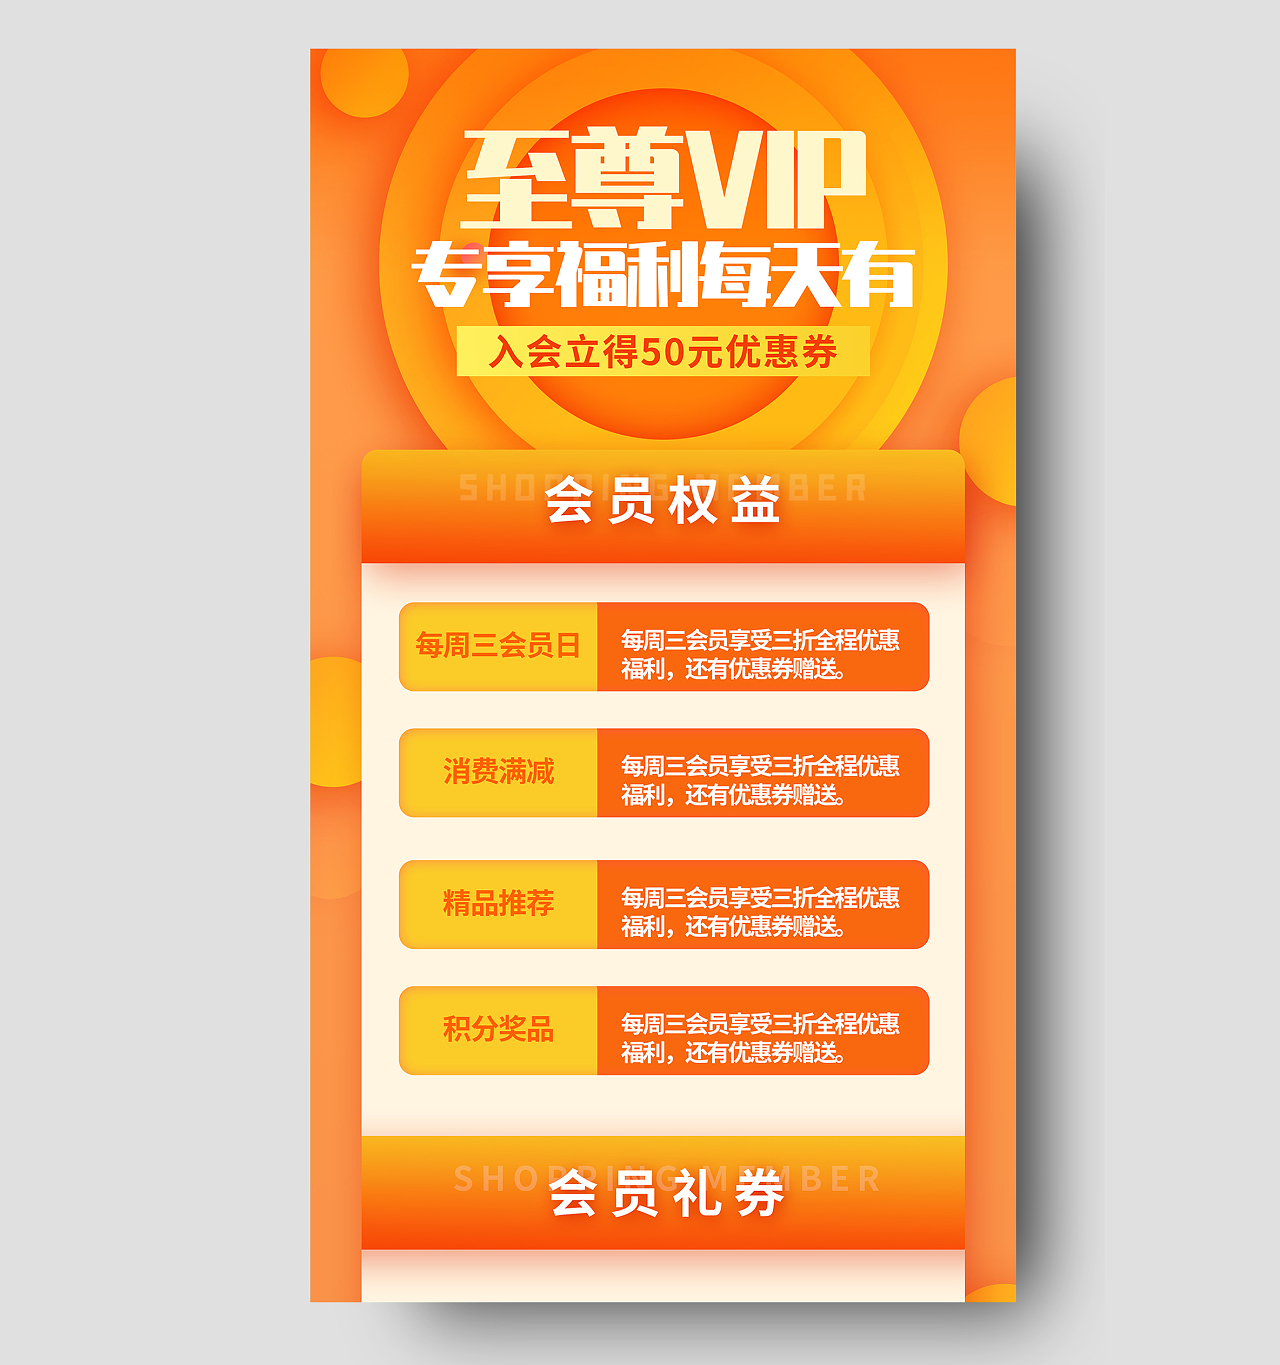 橙色炫彩至尊VIP专享福利每天有活动UI手机长图会员权益